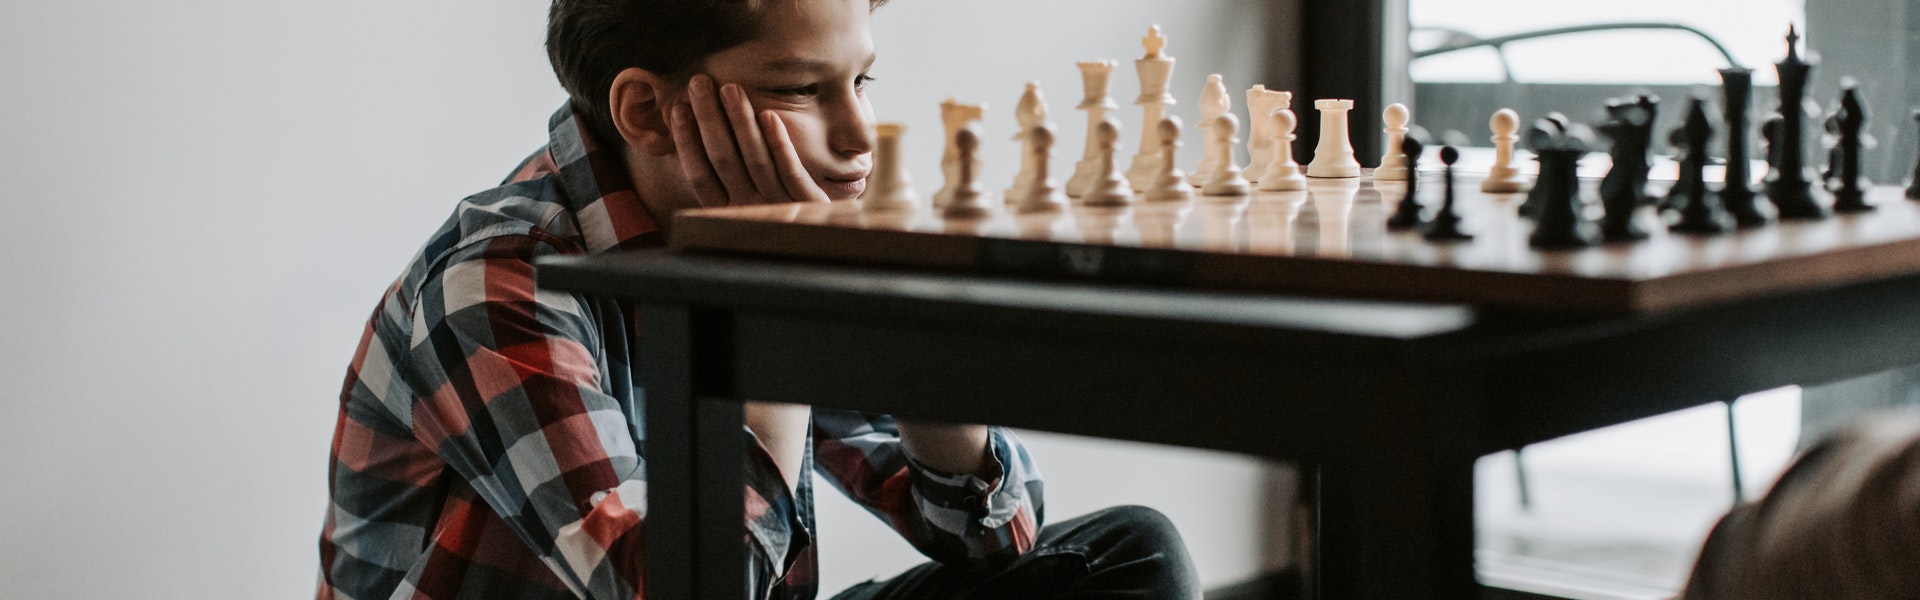 Razlozi za igranje šaha | Škola šaha